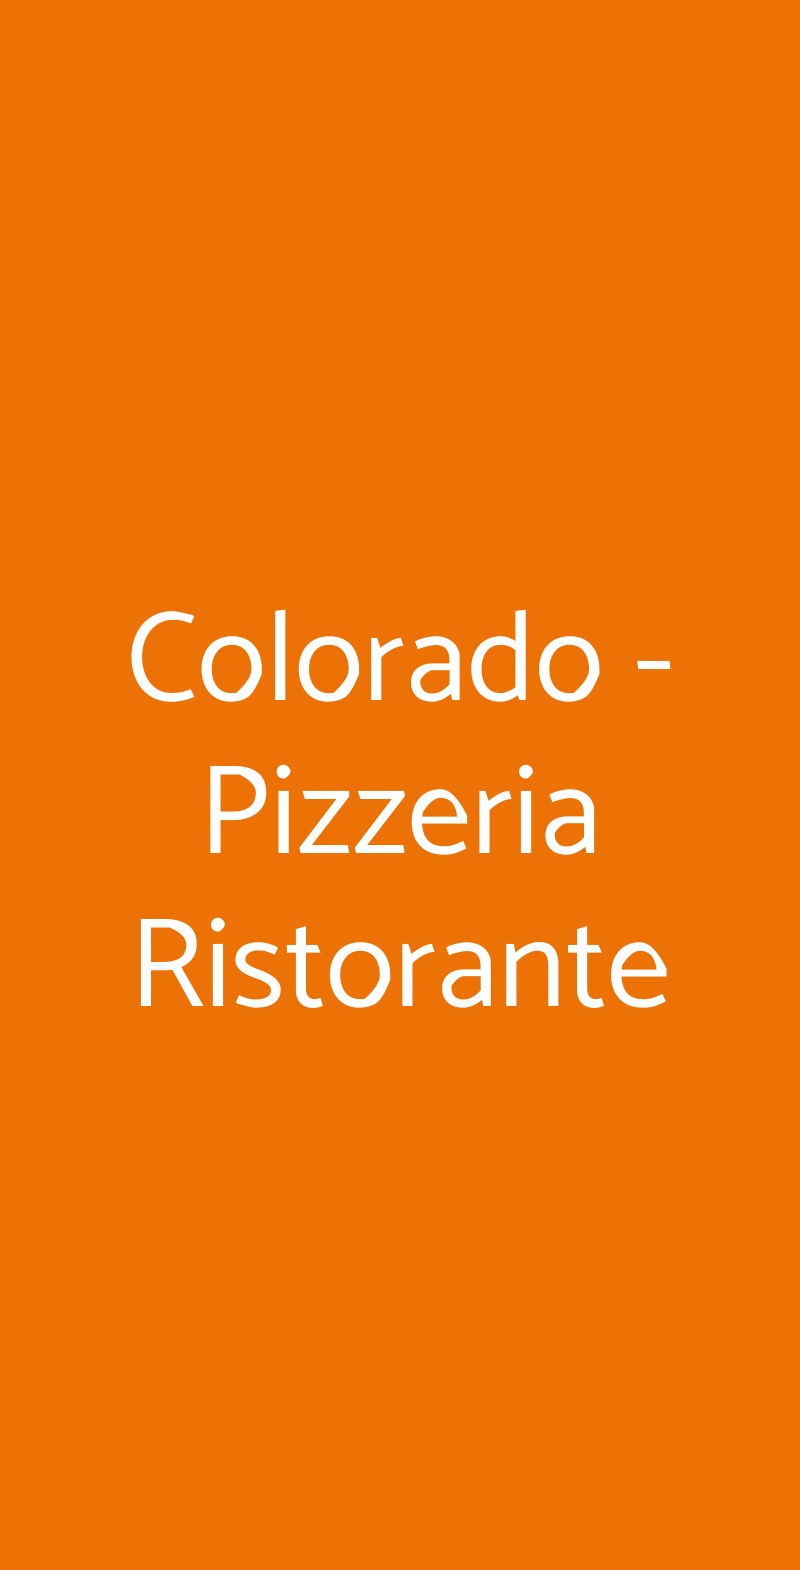 Colorado - Pizzeria Ristorante Ceriale menù 1 pagina